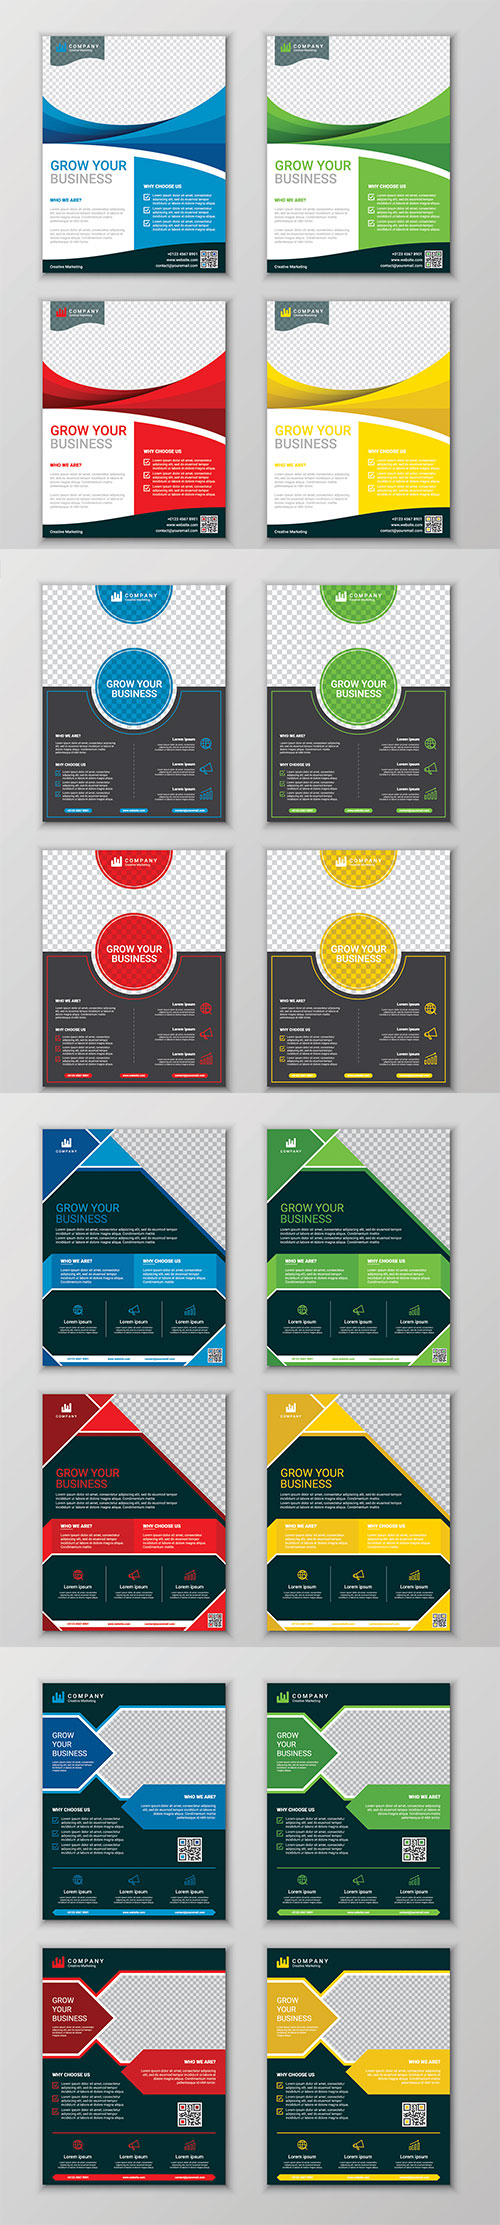 Modern business flyer design template set, vector illustration